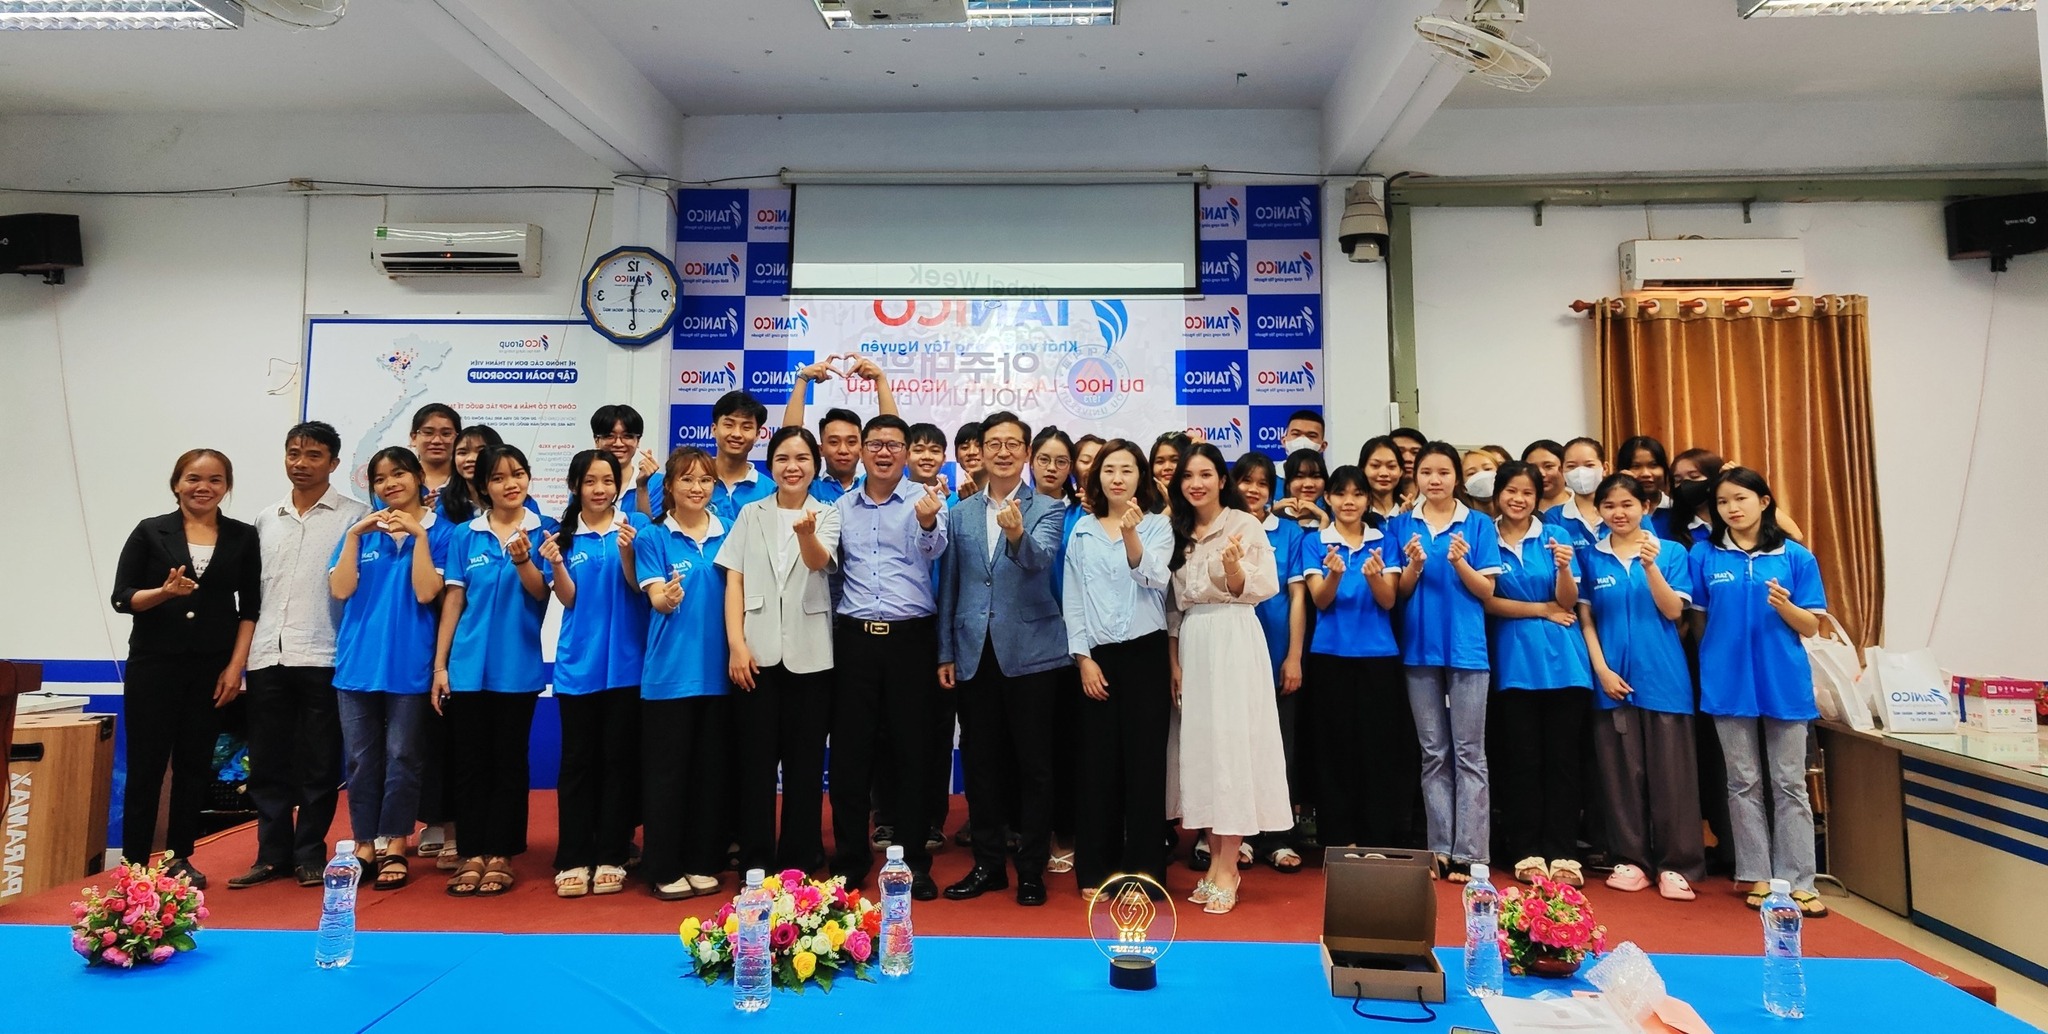 KHÓA HỌC HÈ TANICO 2019 - Ngoại khóa tại Nha Trang